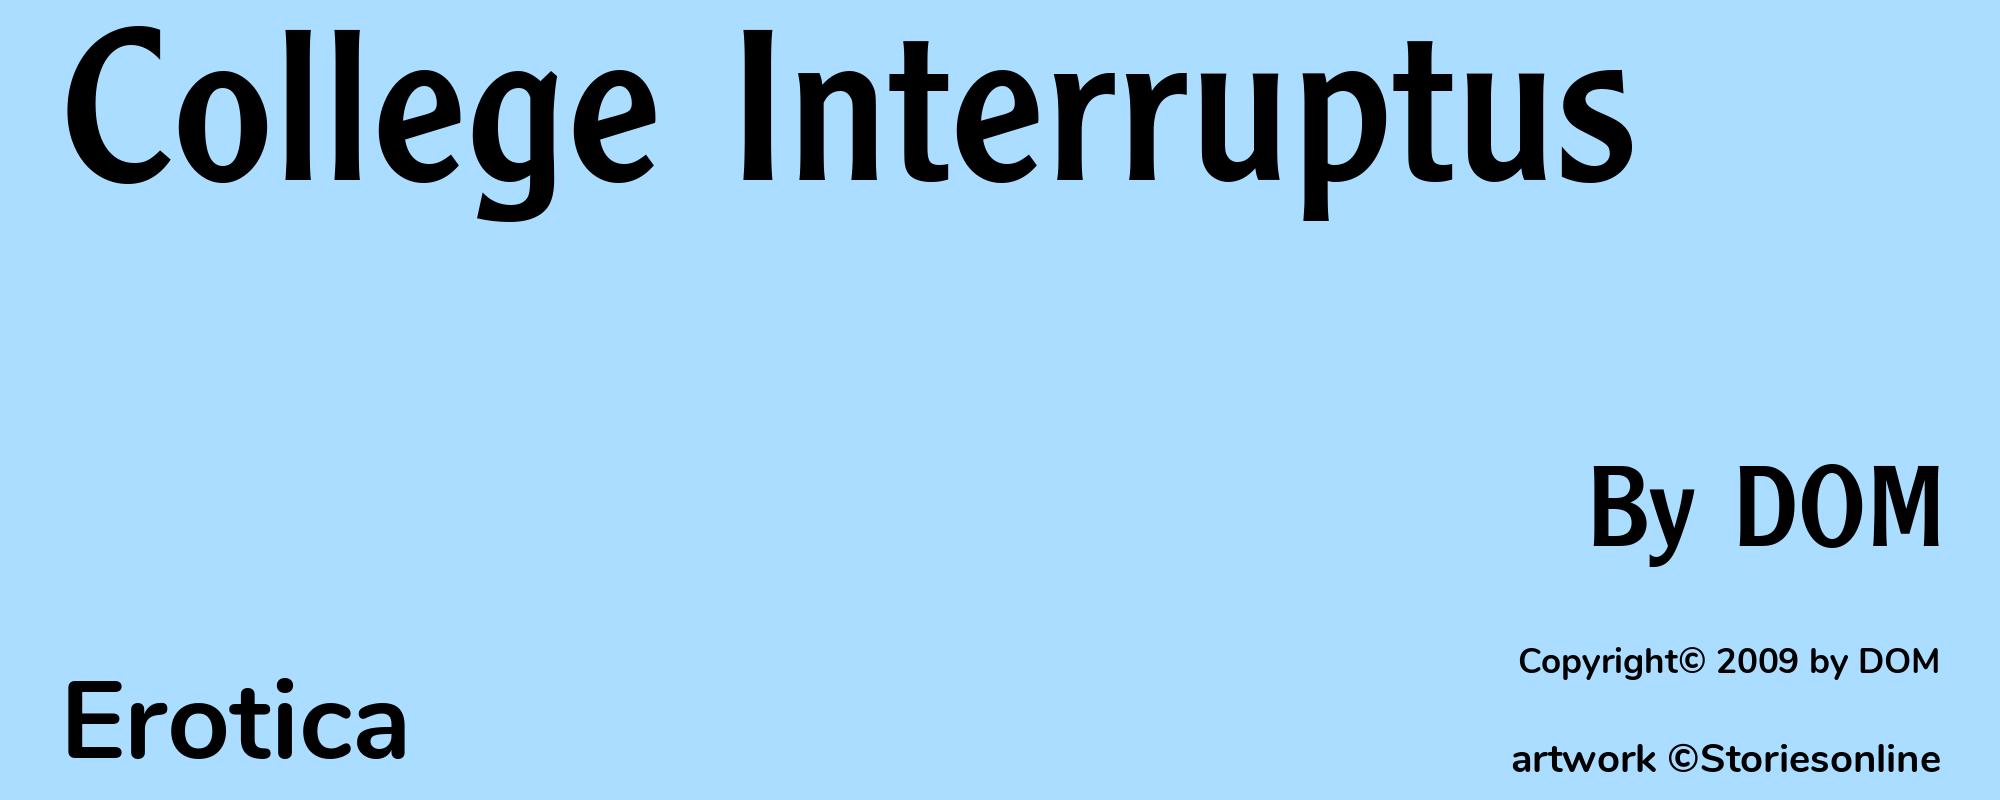 College Interruptus - Cover